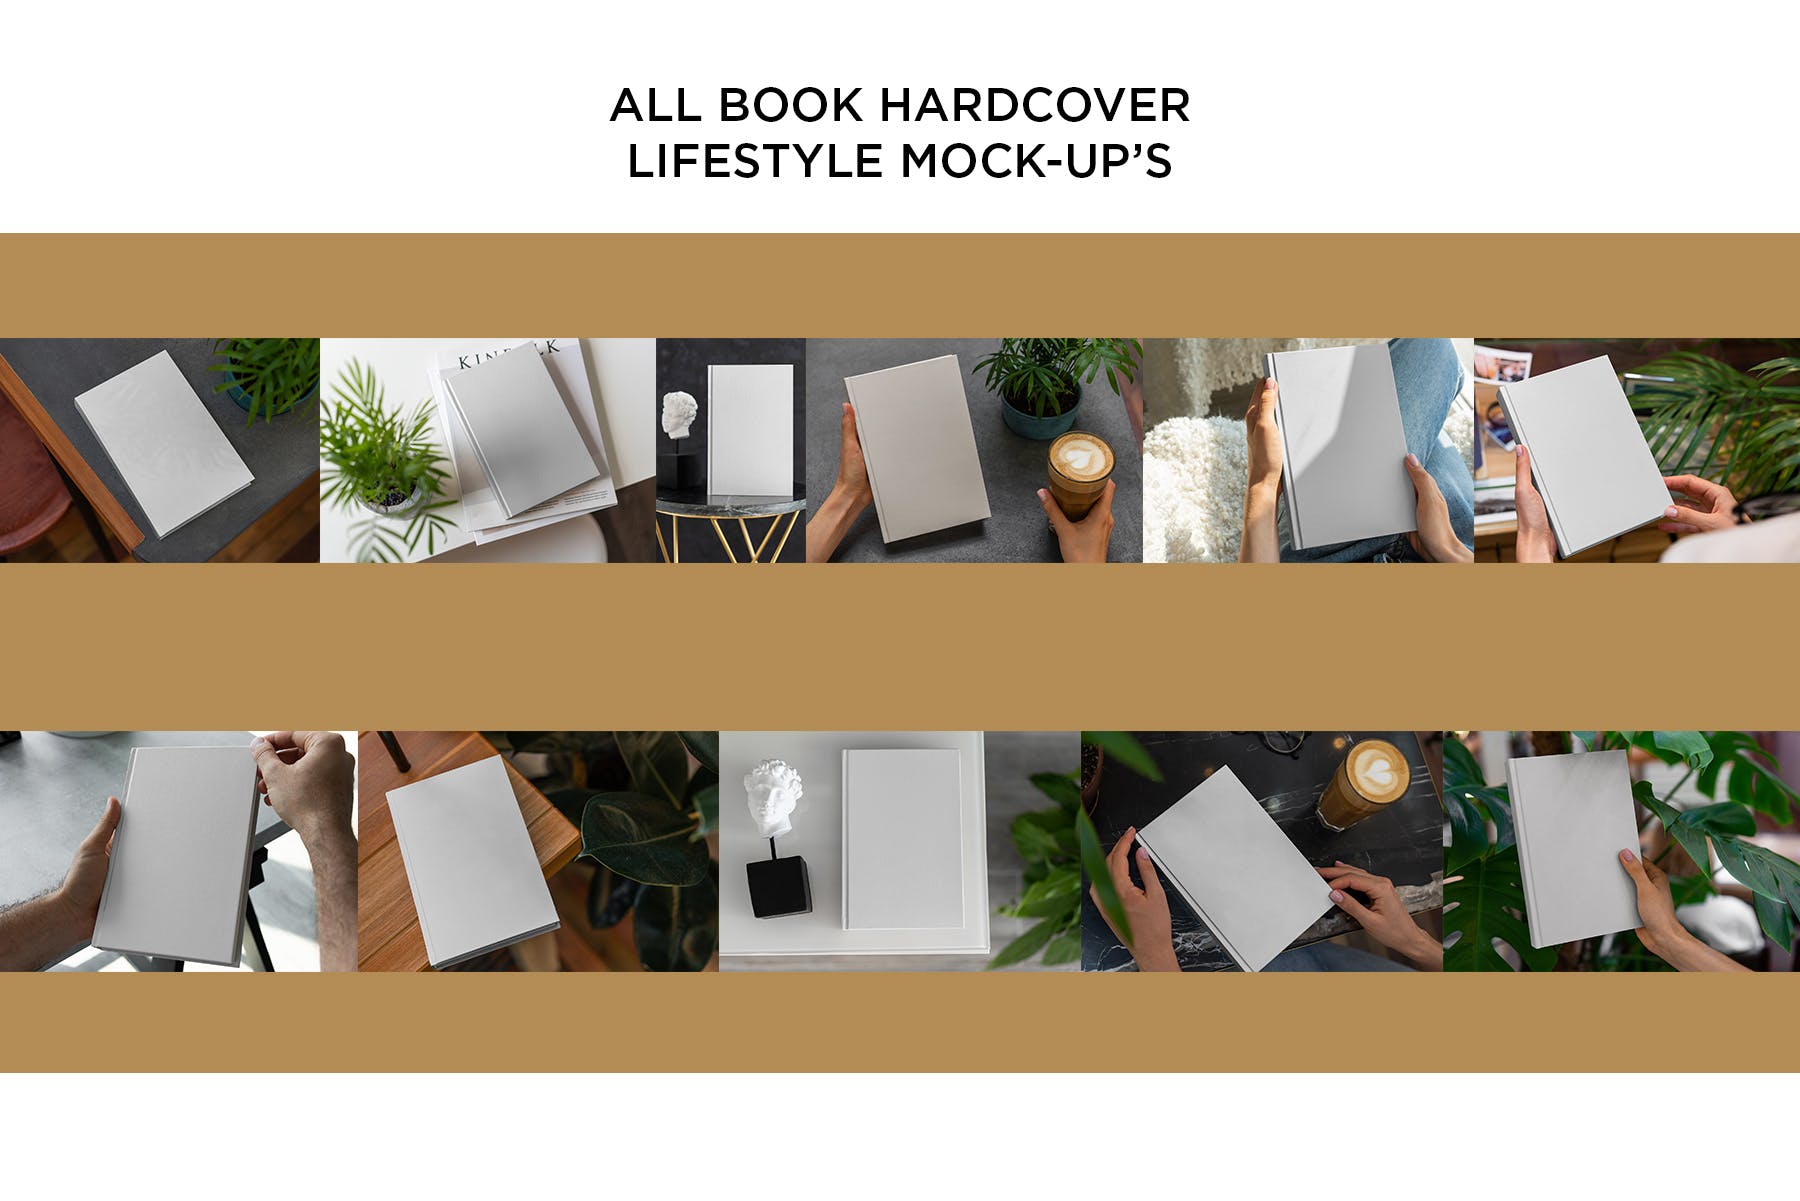 高端精装图书镂空封面设计样机模板 Book Hardcover Mock-Up Lifestyle插图3